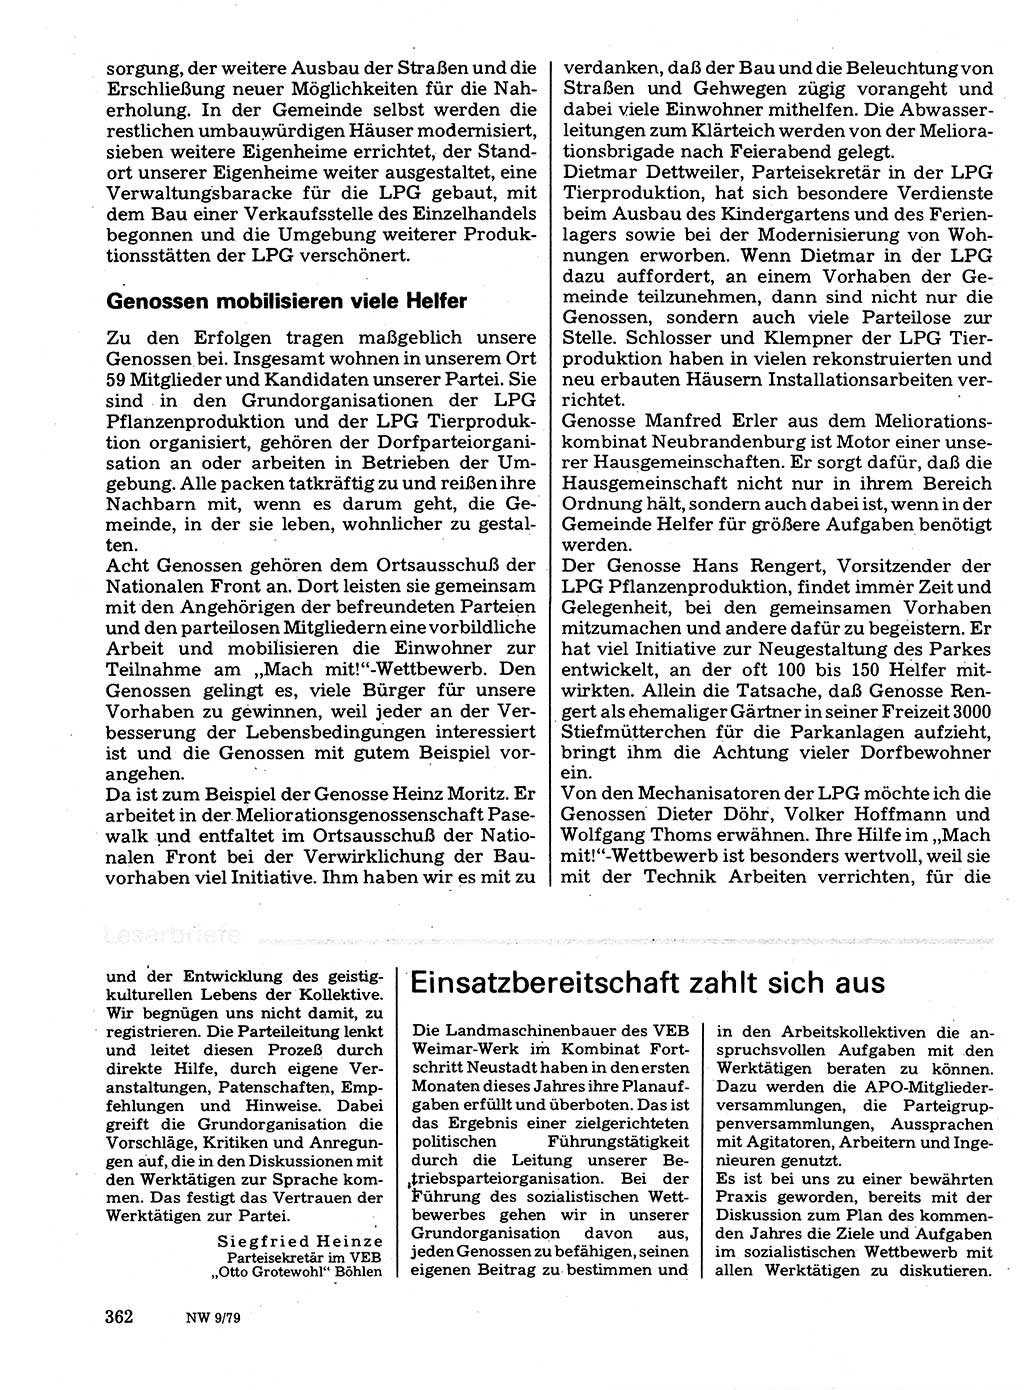 Neuer Weg (NW), Organ des Zentralkomitees (ZK) der SED (Sozialistische Einheitspartei Deutschlands) für Fragen des Parteilebens, 34. Jahrgang [Deutsche Demokratische Republik (DDR)] 1979, Seite 362 (NW ZK SED DDR 1979, S. 362)